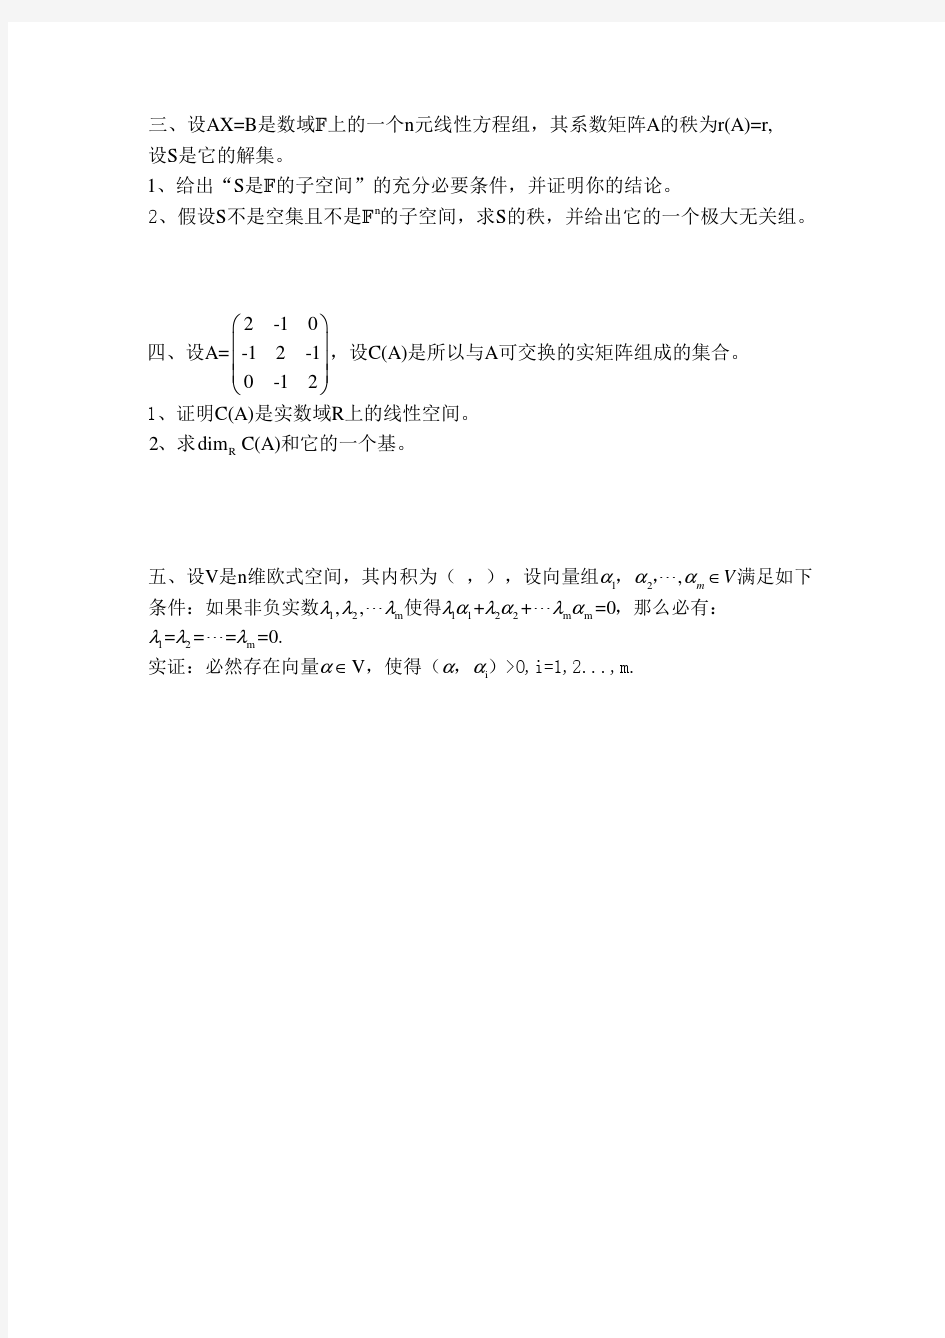 四川大学2010年高等代数考研试题整理版